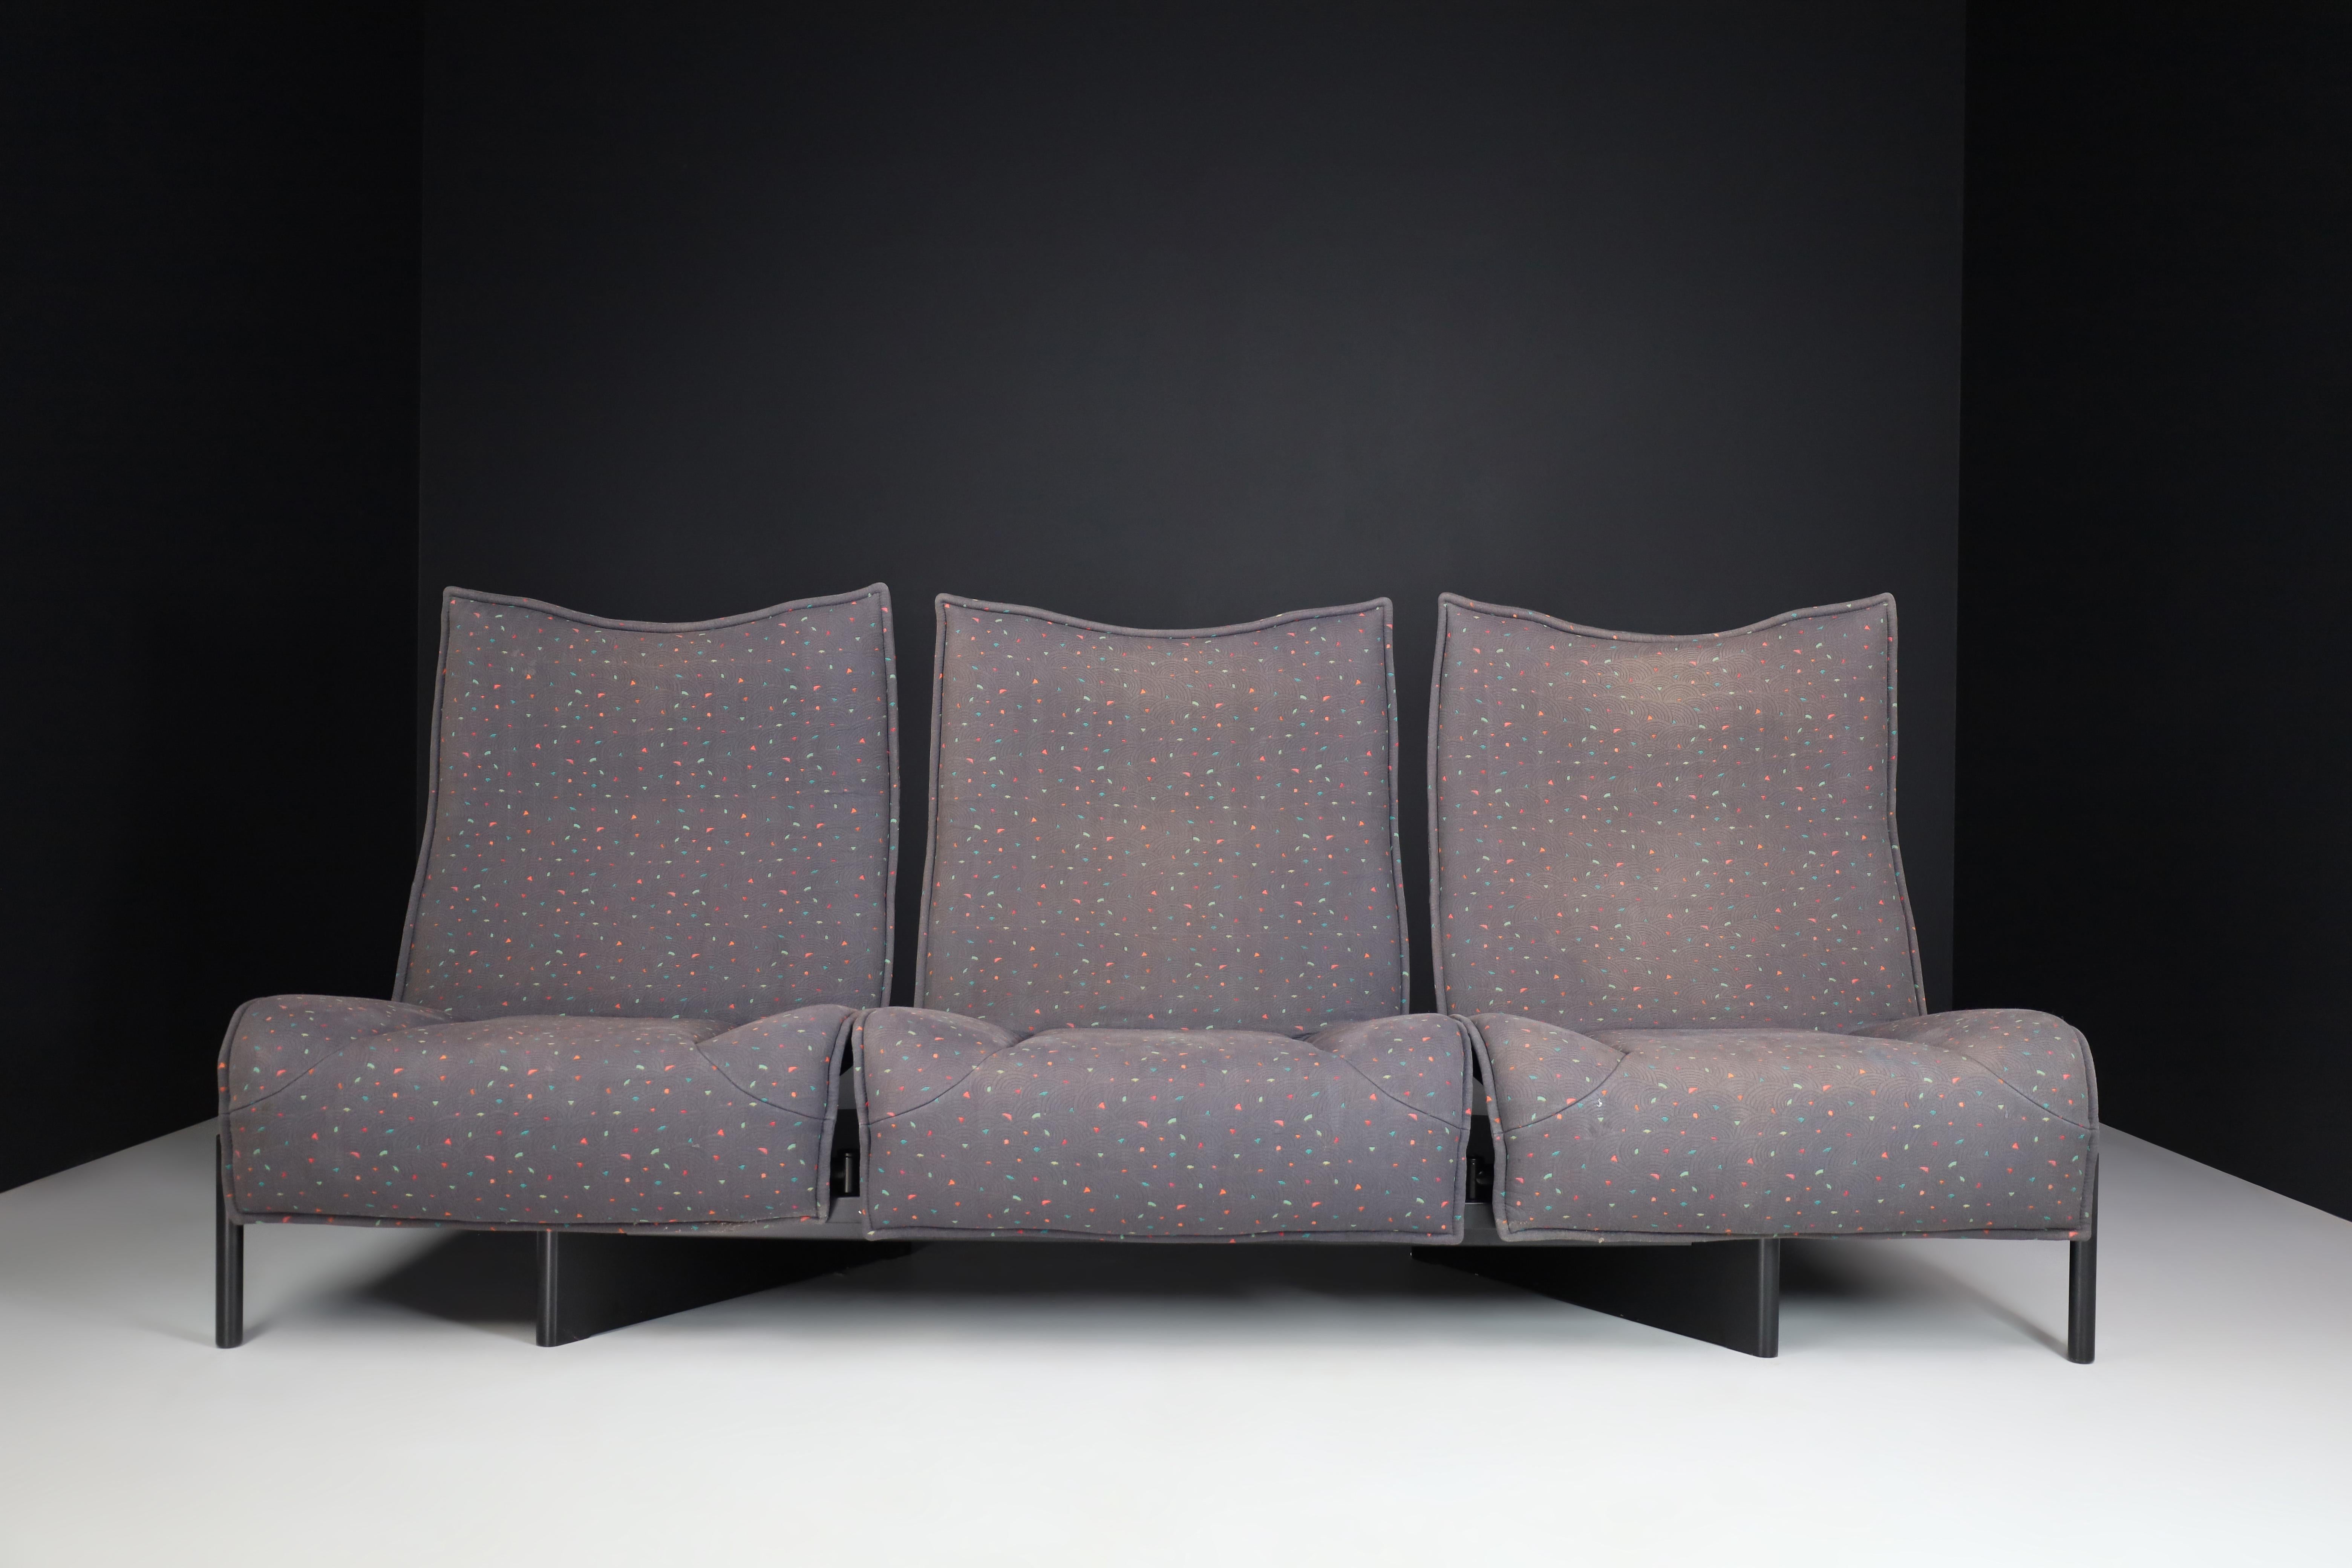 Ce canapé multicolore et réglable a été conçu par Vico Magistretti pour Cassina, vers les années 1980. Ce modèle italien, élégant et très désirable, présente des sièges recouverts de tissu et réglables en place et en hauteur, comme la version